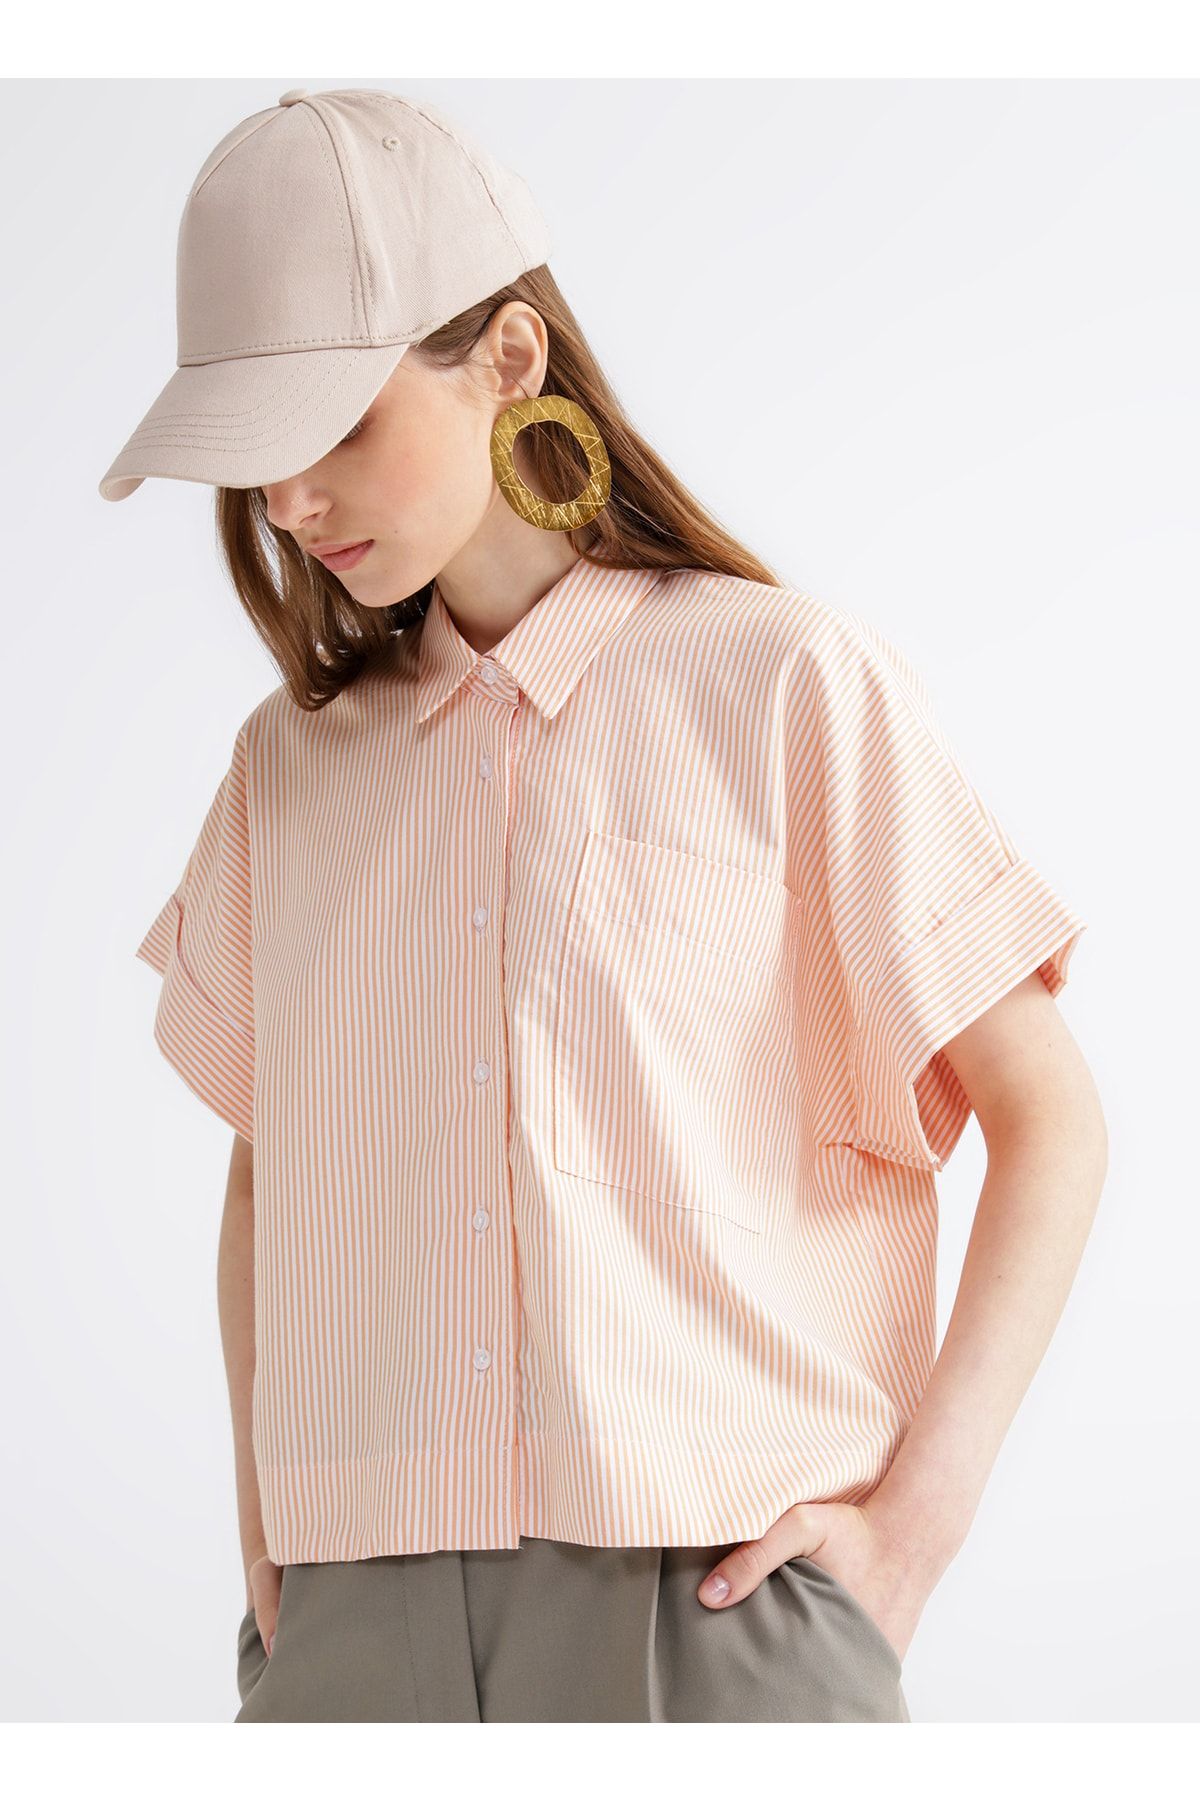 Fabrika Comfort Gömlek Yaka Çizgili Turuncu - Beyaz Kadın Gömlek Cm-nakos